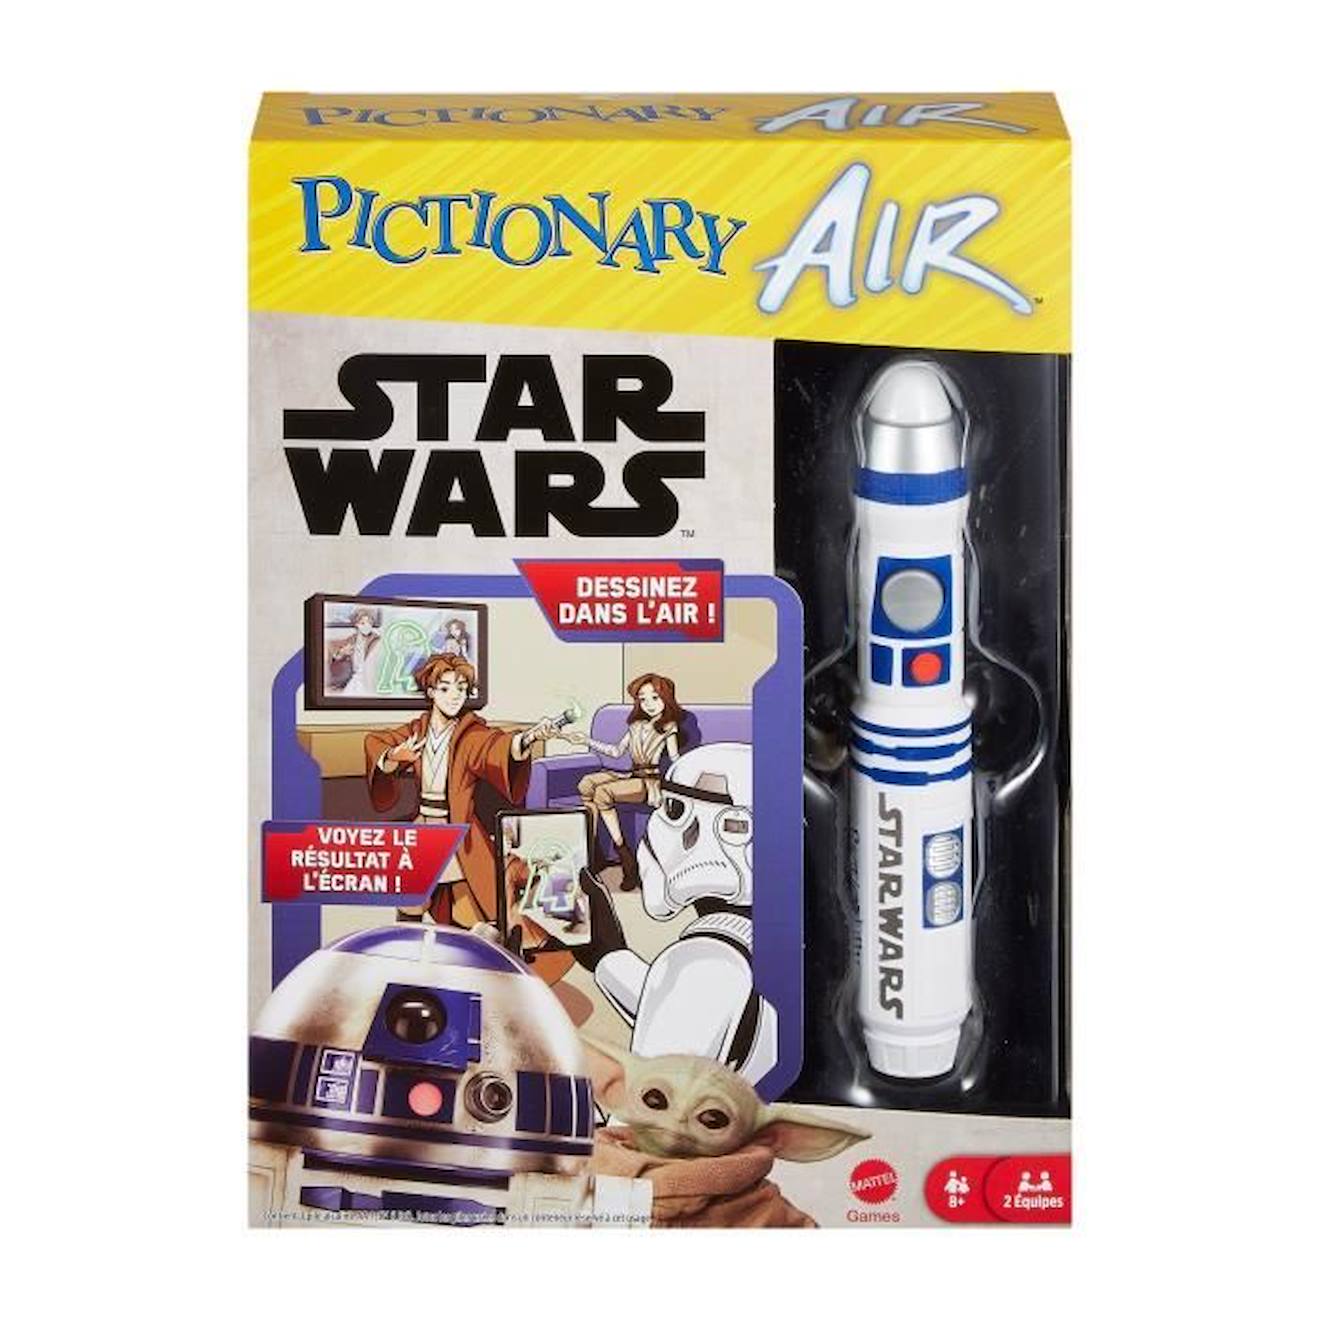 Pictionary - Pictionary Air Star Wars - Jeux De Société - 8 Ans Et + Blanc